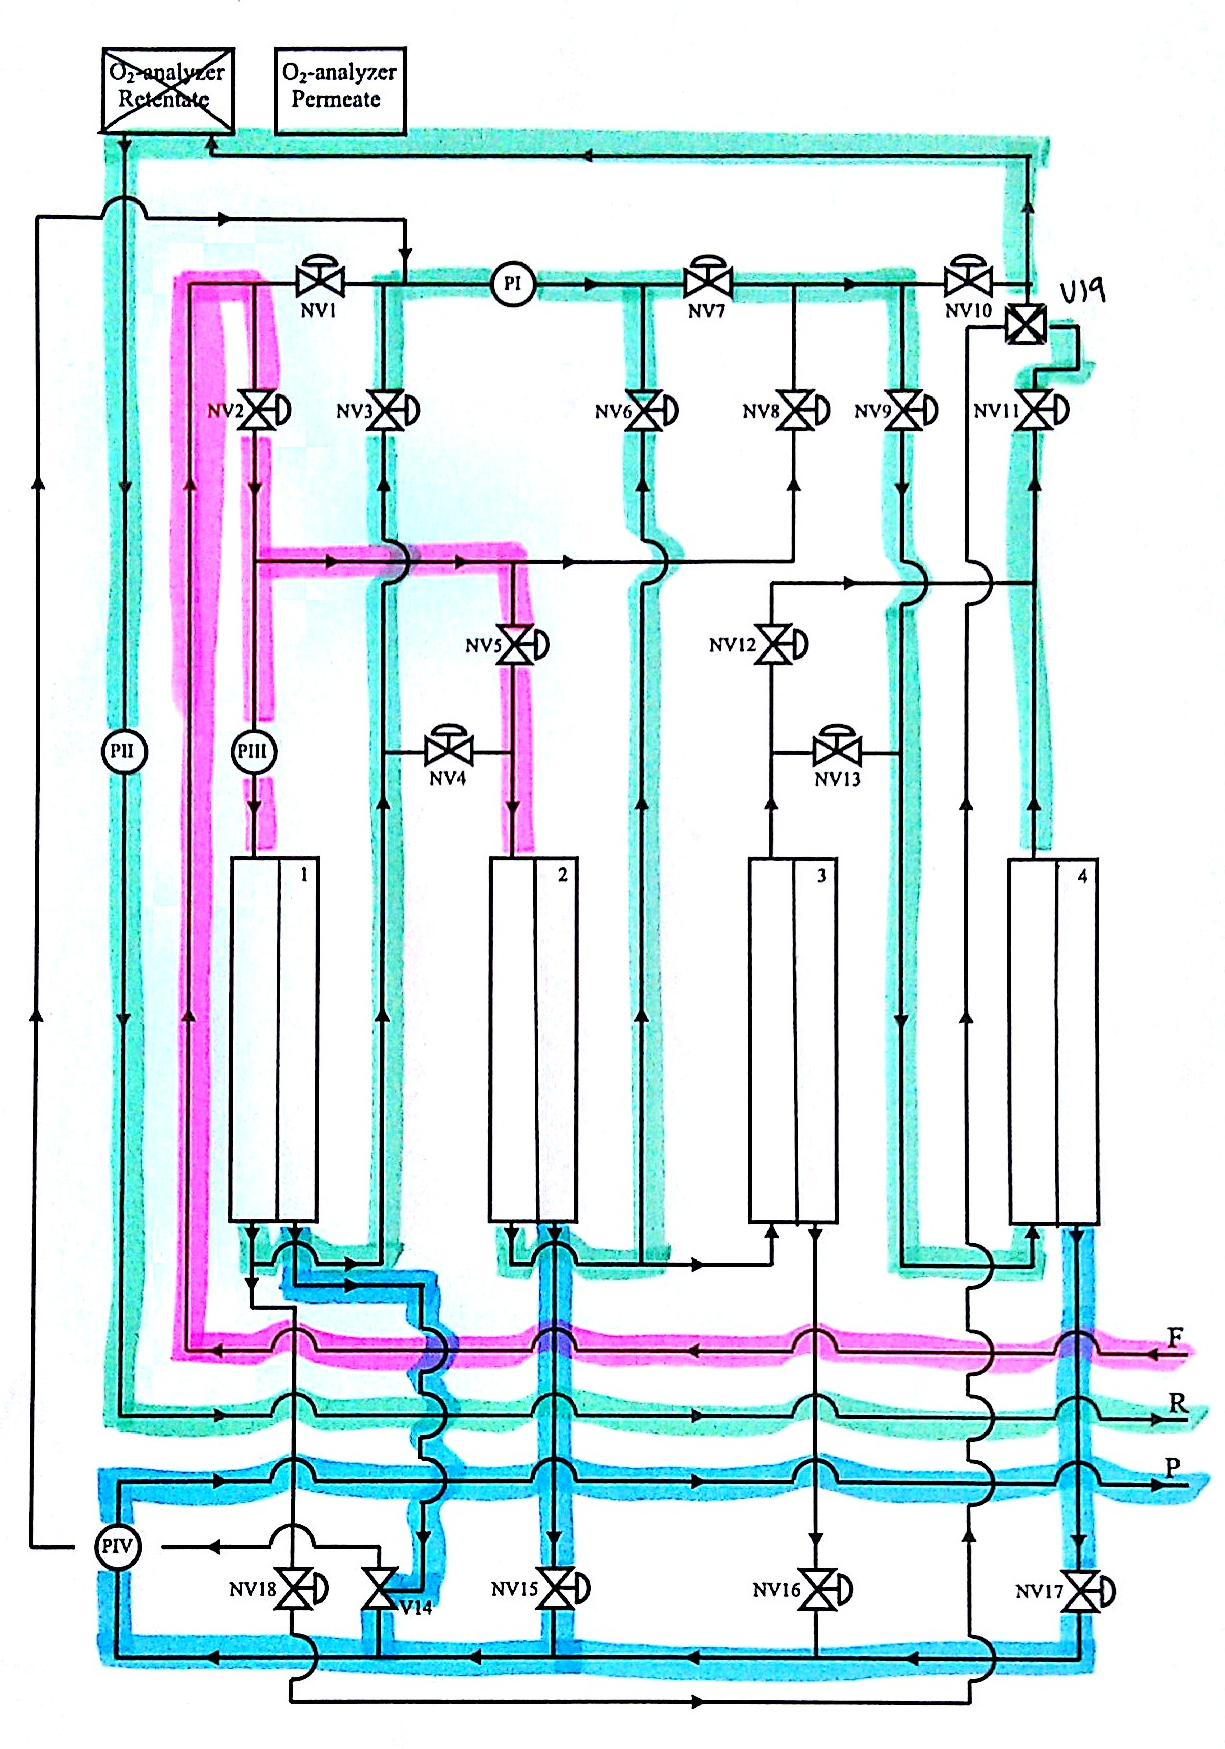 I Figur C.4 er flytskjema for konfigurasjon 4 vist. Figur C.4: Flytskjema for konfigurasjon 4, som består av to moduler i parallell, som igjen er i serie med en tredje modul.